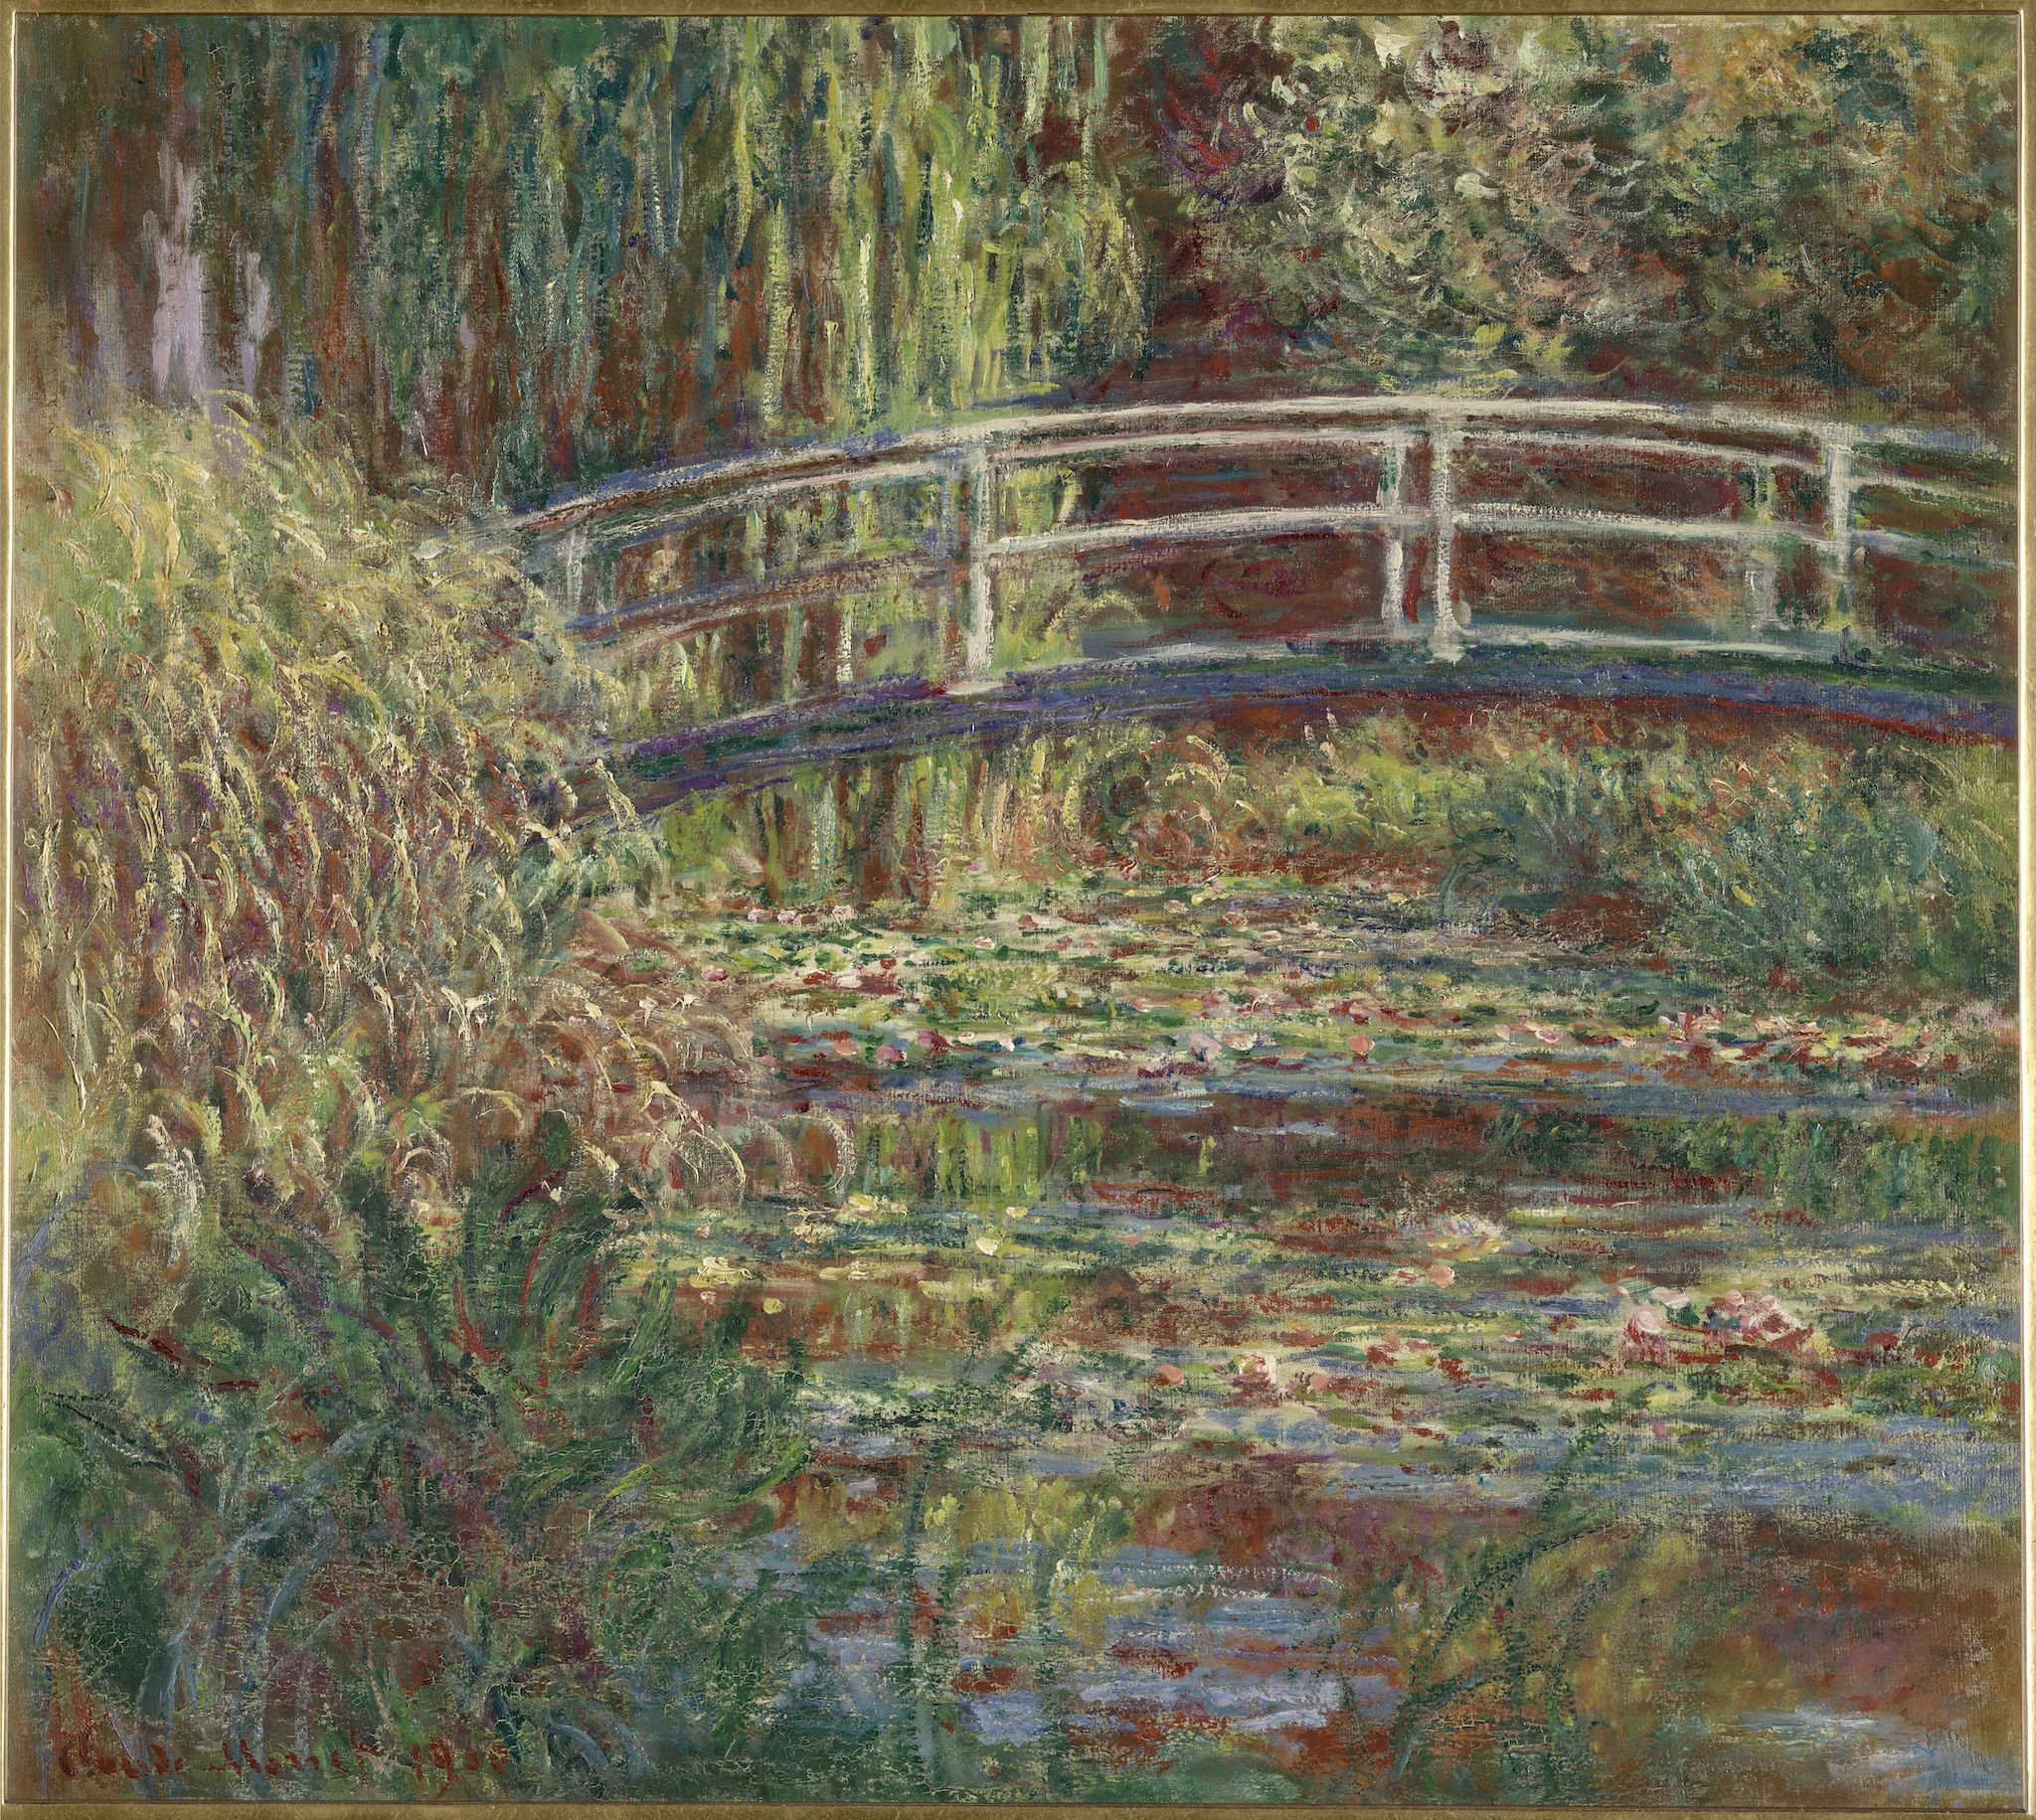 Le bassin aux nymphéas, harmonie rose, de Claude Monet (1840-1926), 1900, huile sur toile.